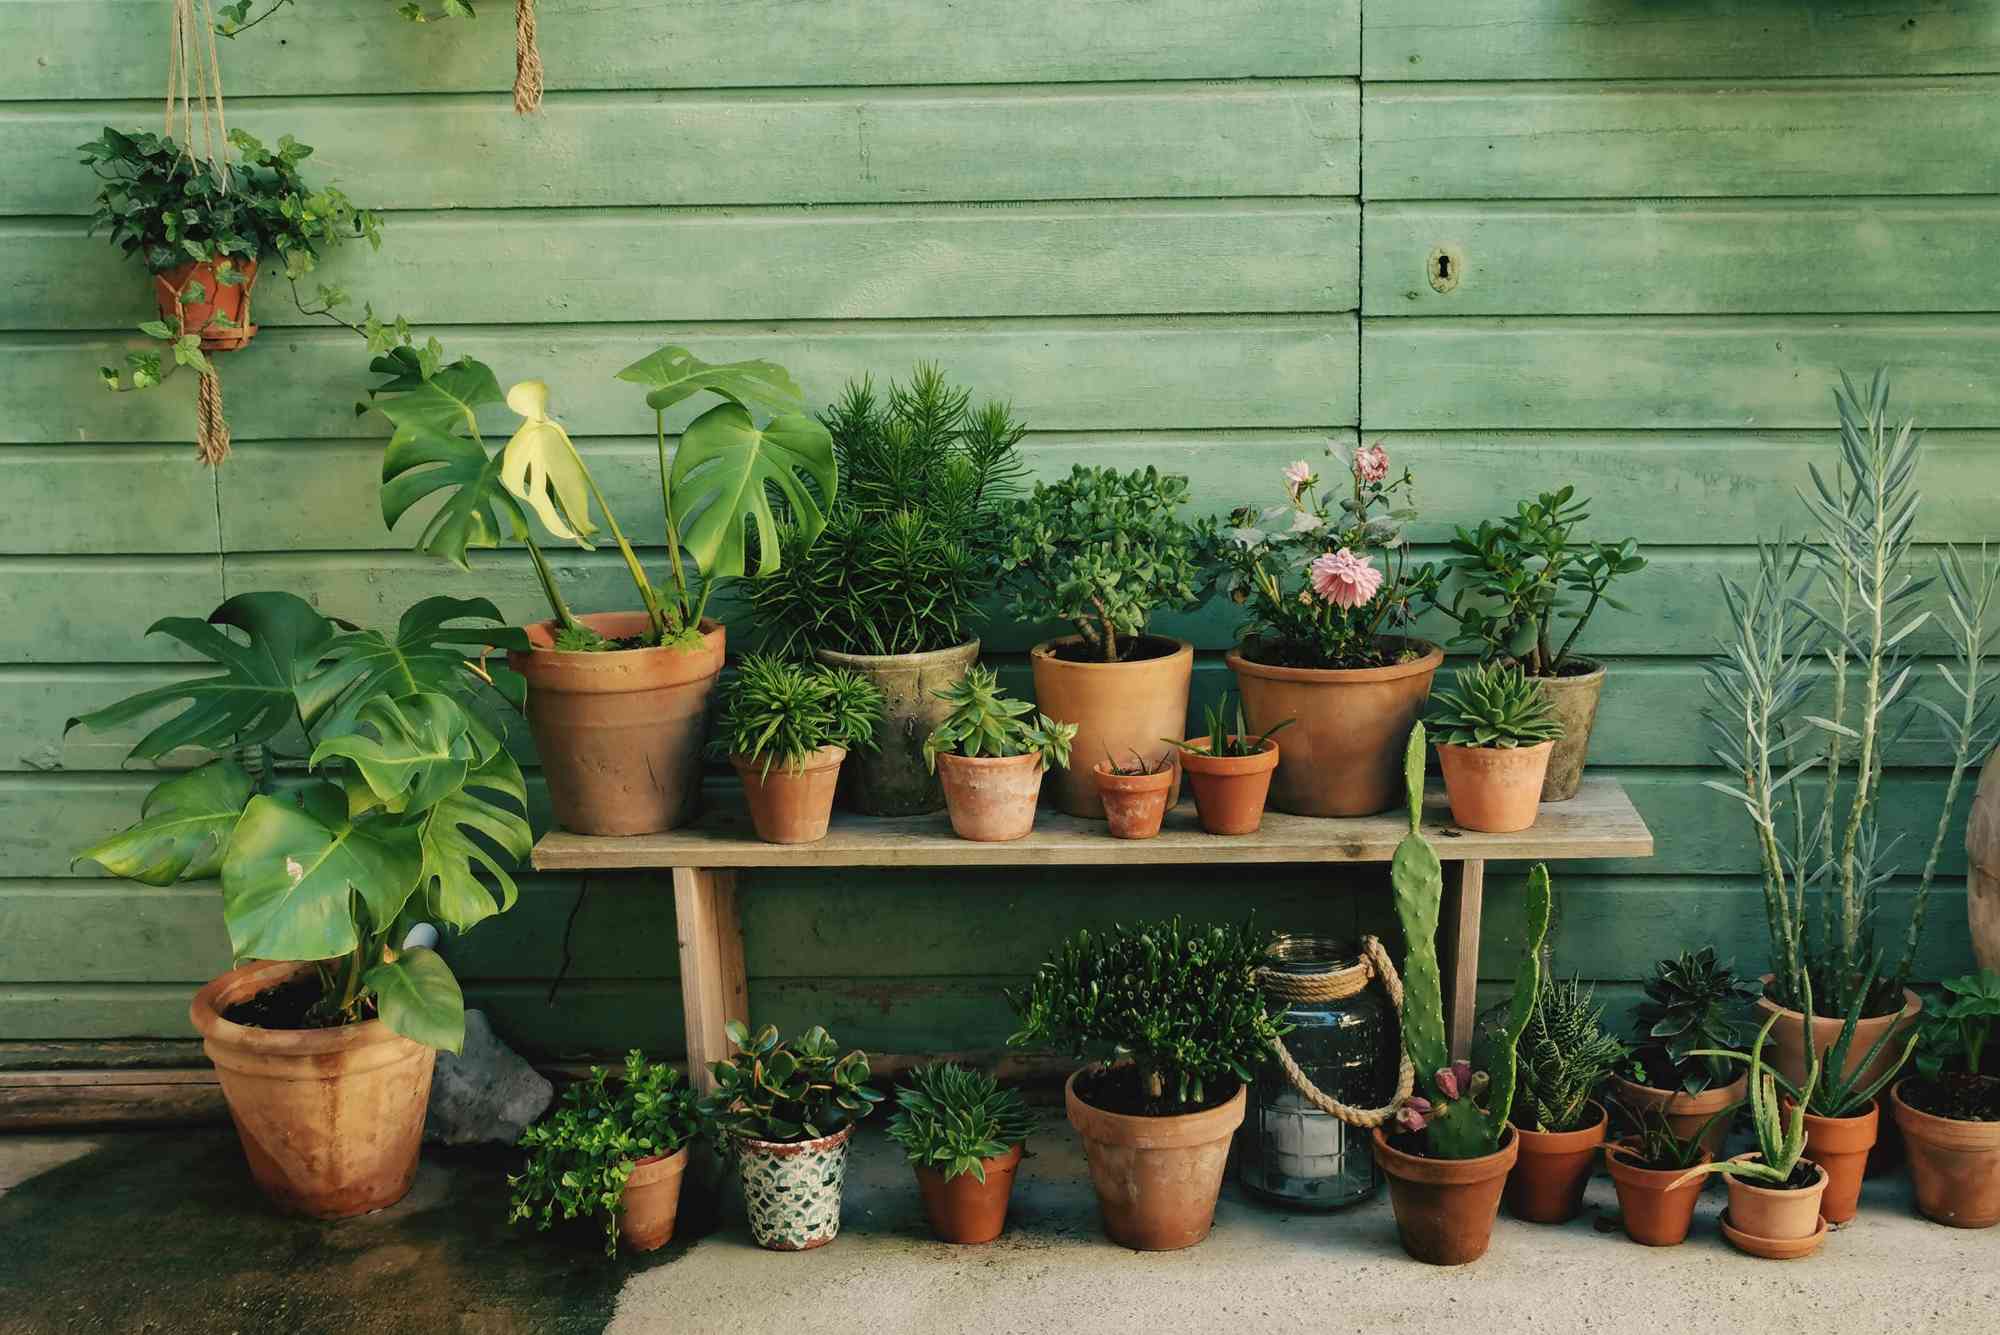 几十种植物在赤陶罐中靠着绿色的墙